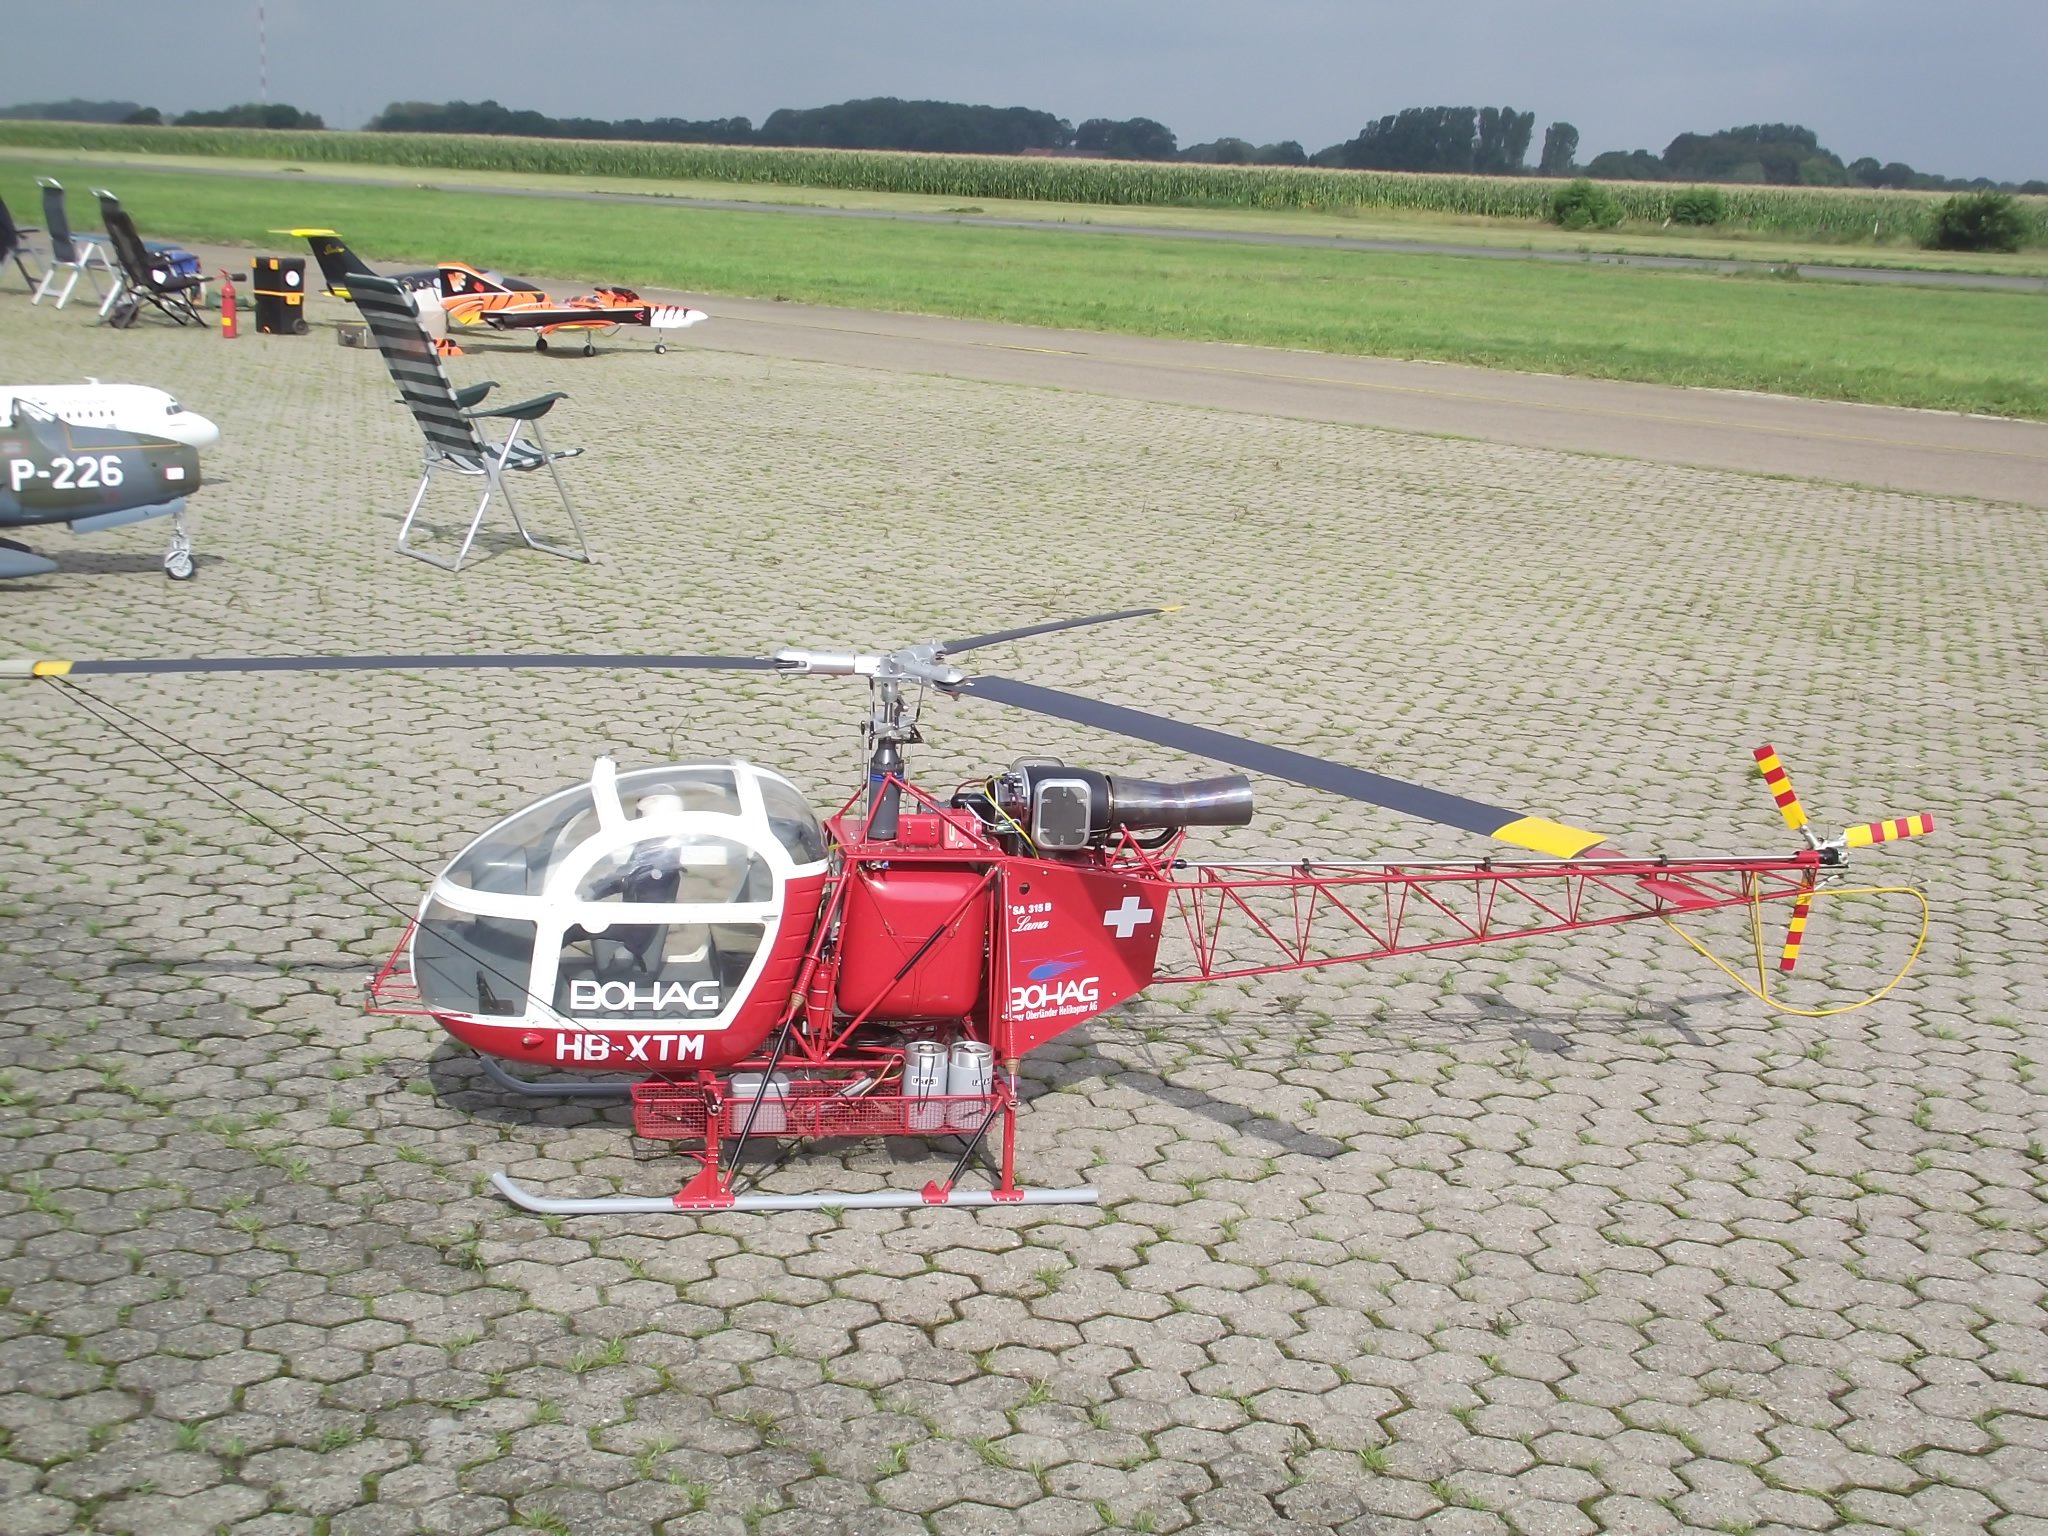 Jet-Flugtage in Ganderkesee - hier werden die Modelle präsentiert wie auch dieser Hubschrauber